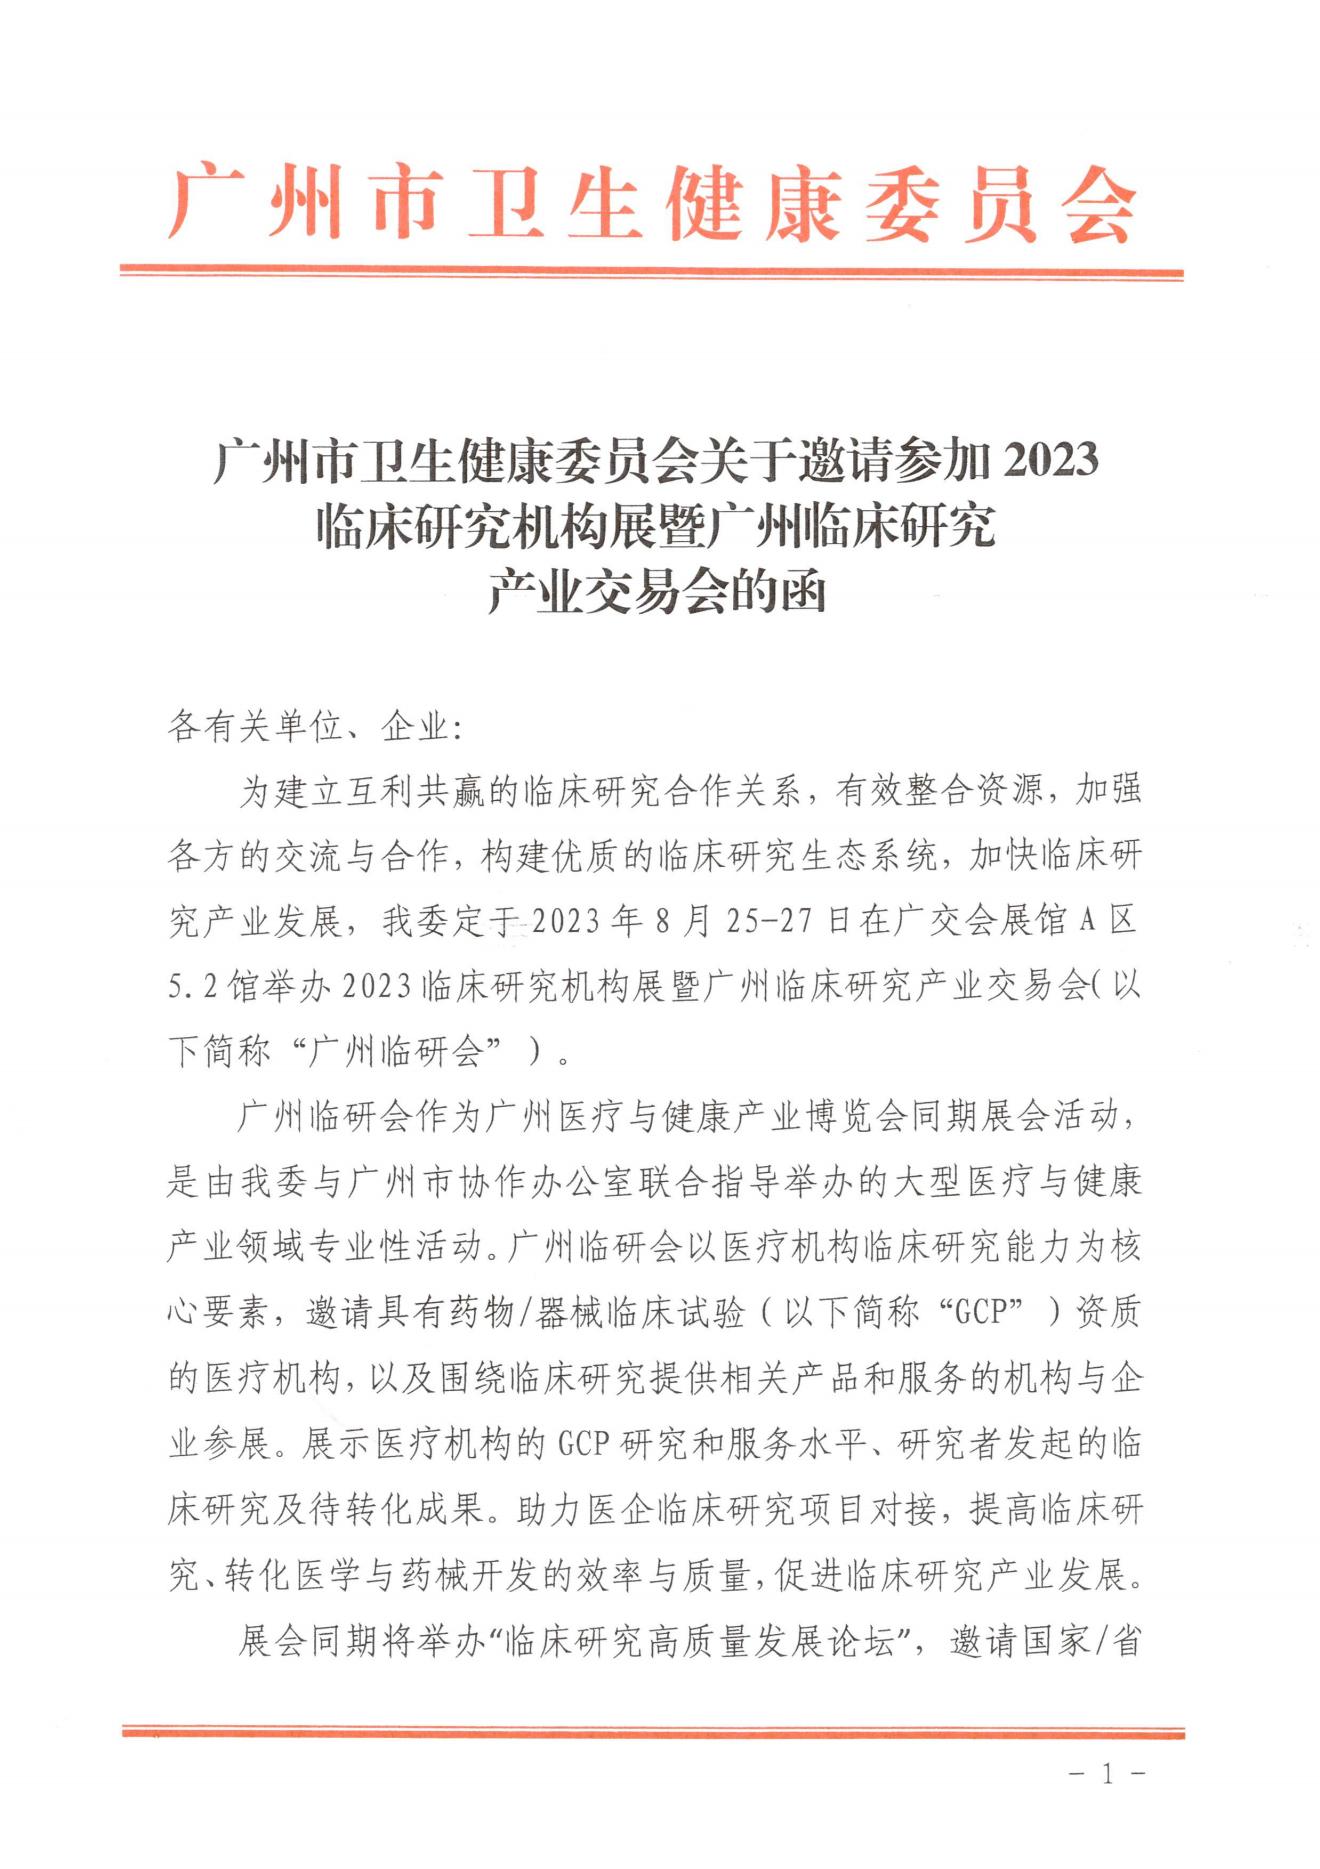 广州市卫健委关于邀请参加2023广州临研会的函-完整版(1)_00.jpg